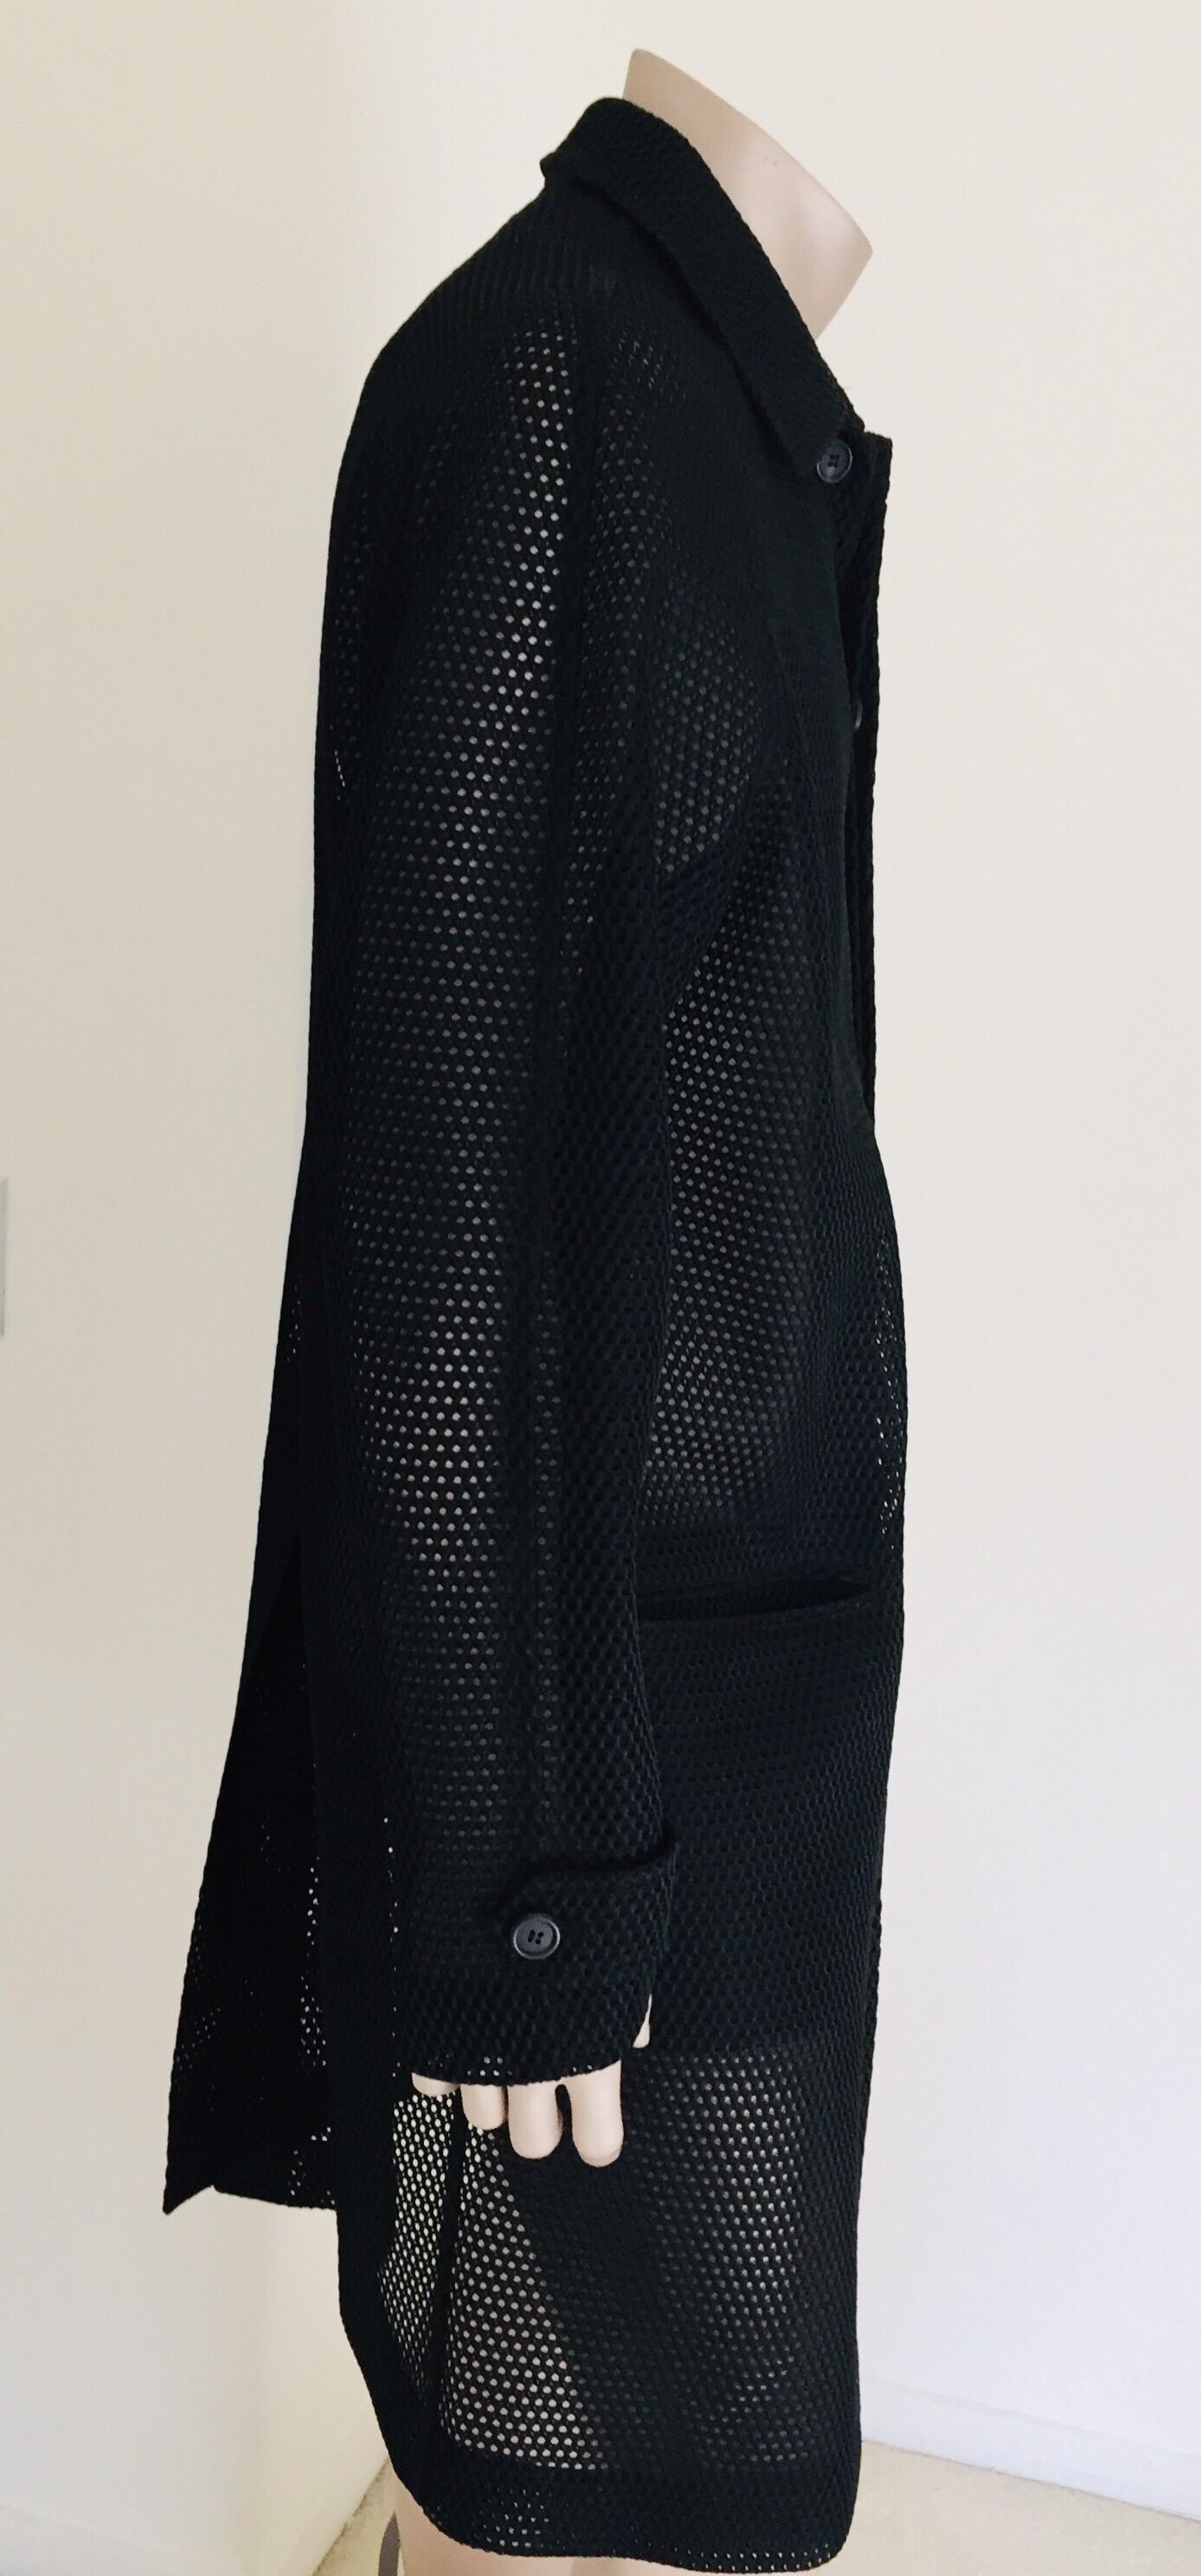 Prada Black Overcoat Made in Italy For Sale 4